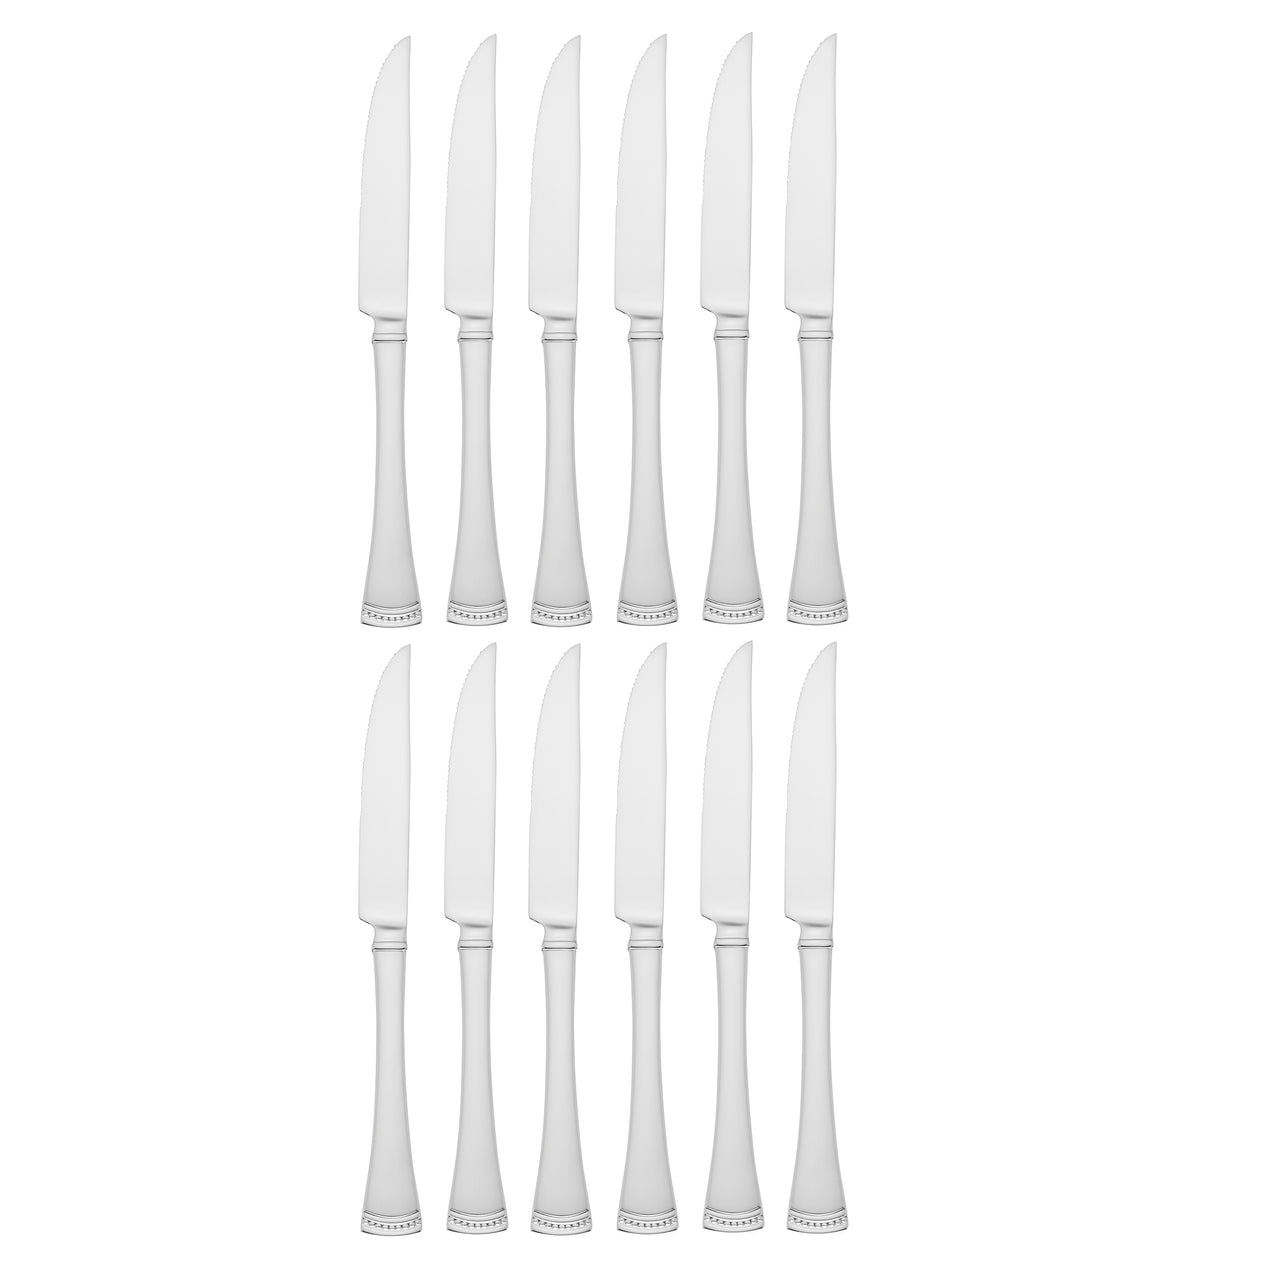 Dinner Knives - Table Knives